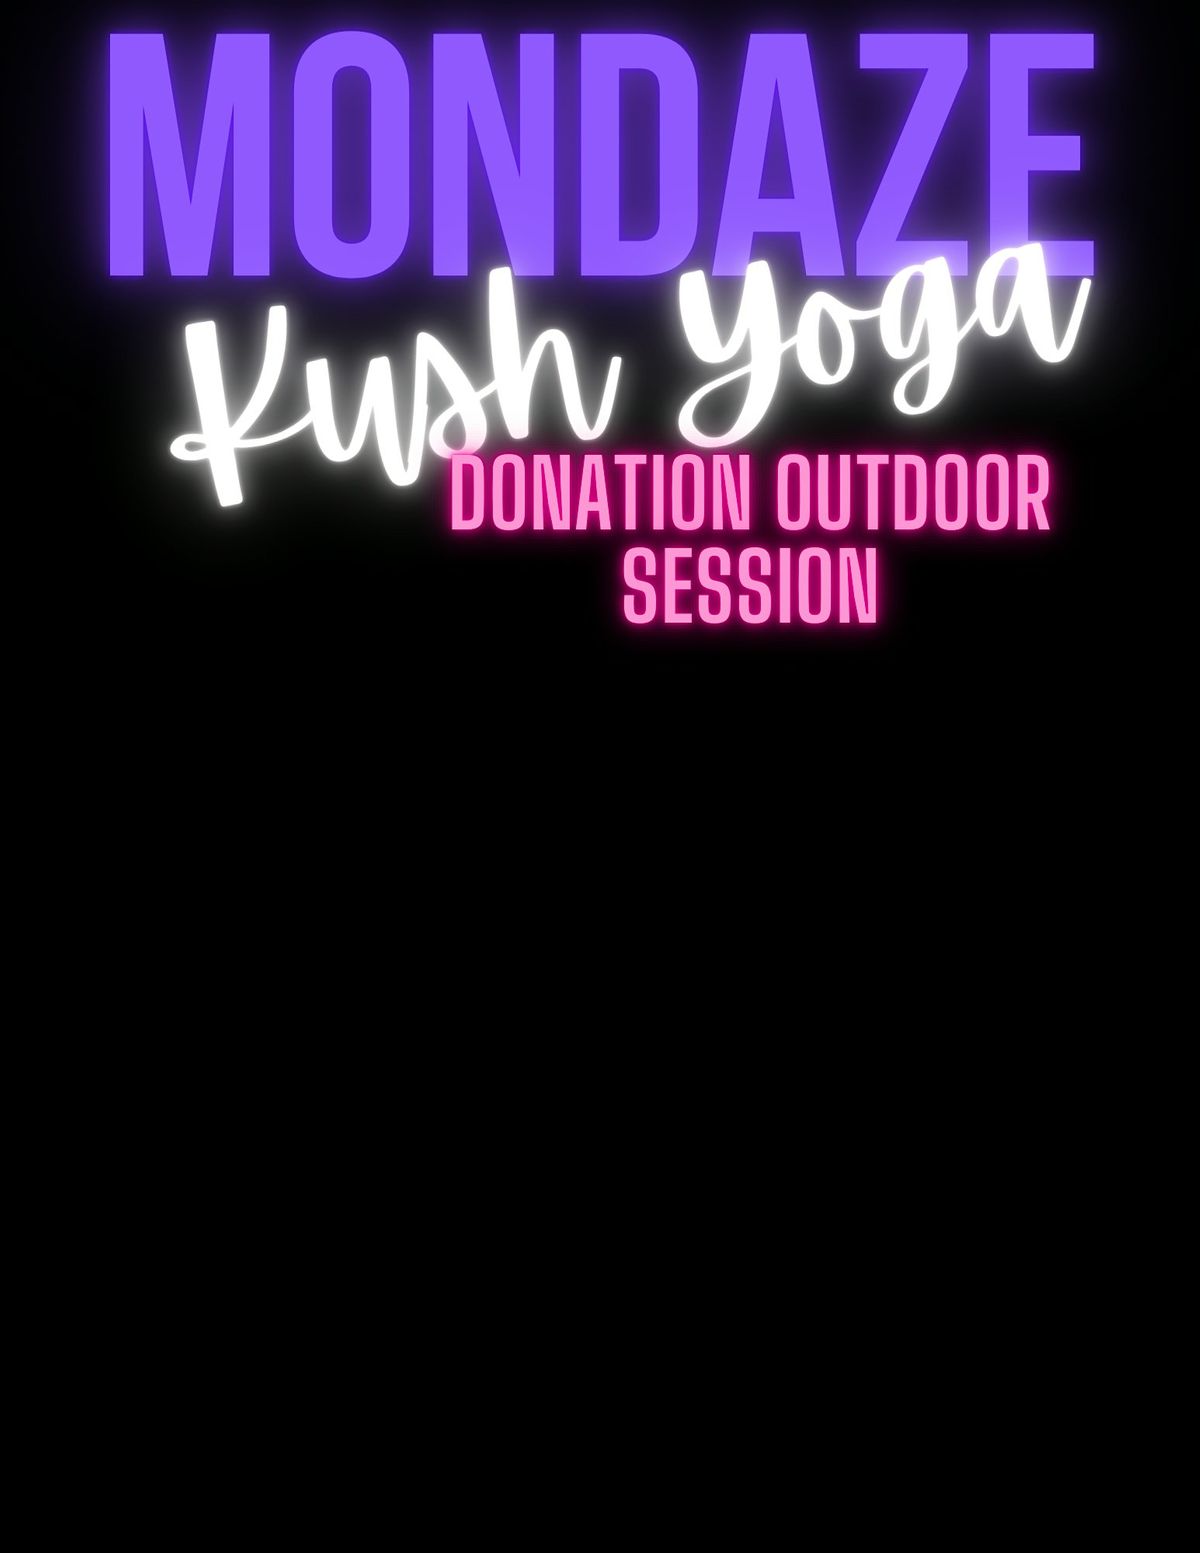 Monday Night Kush Yoga Donation Outdoor Session\u2728 420-friendly Slow Flow \u2728